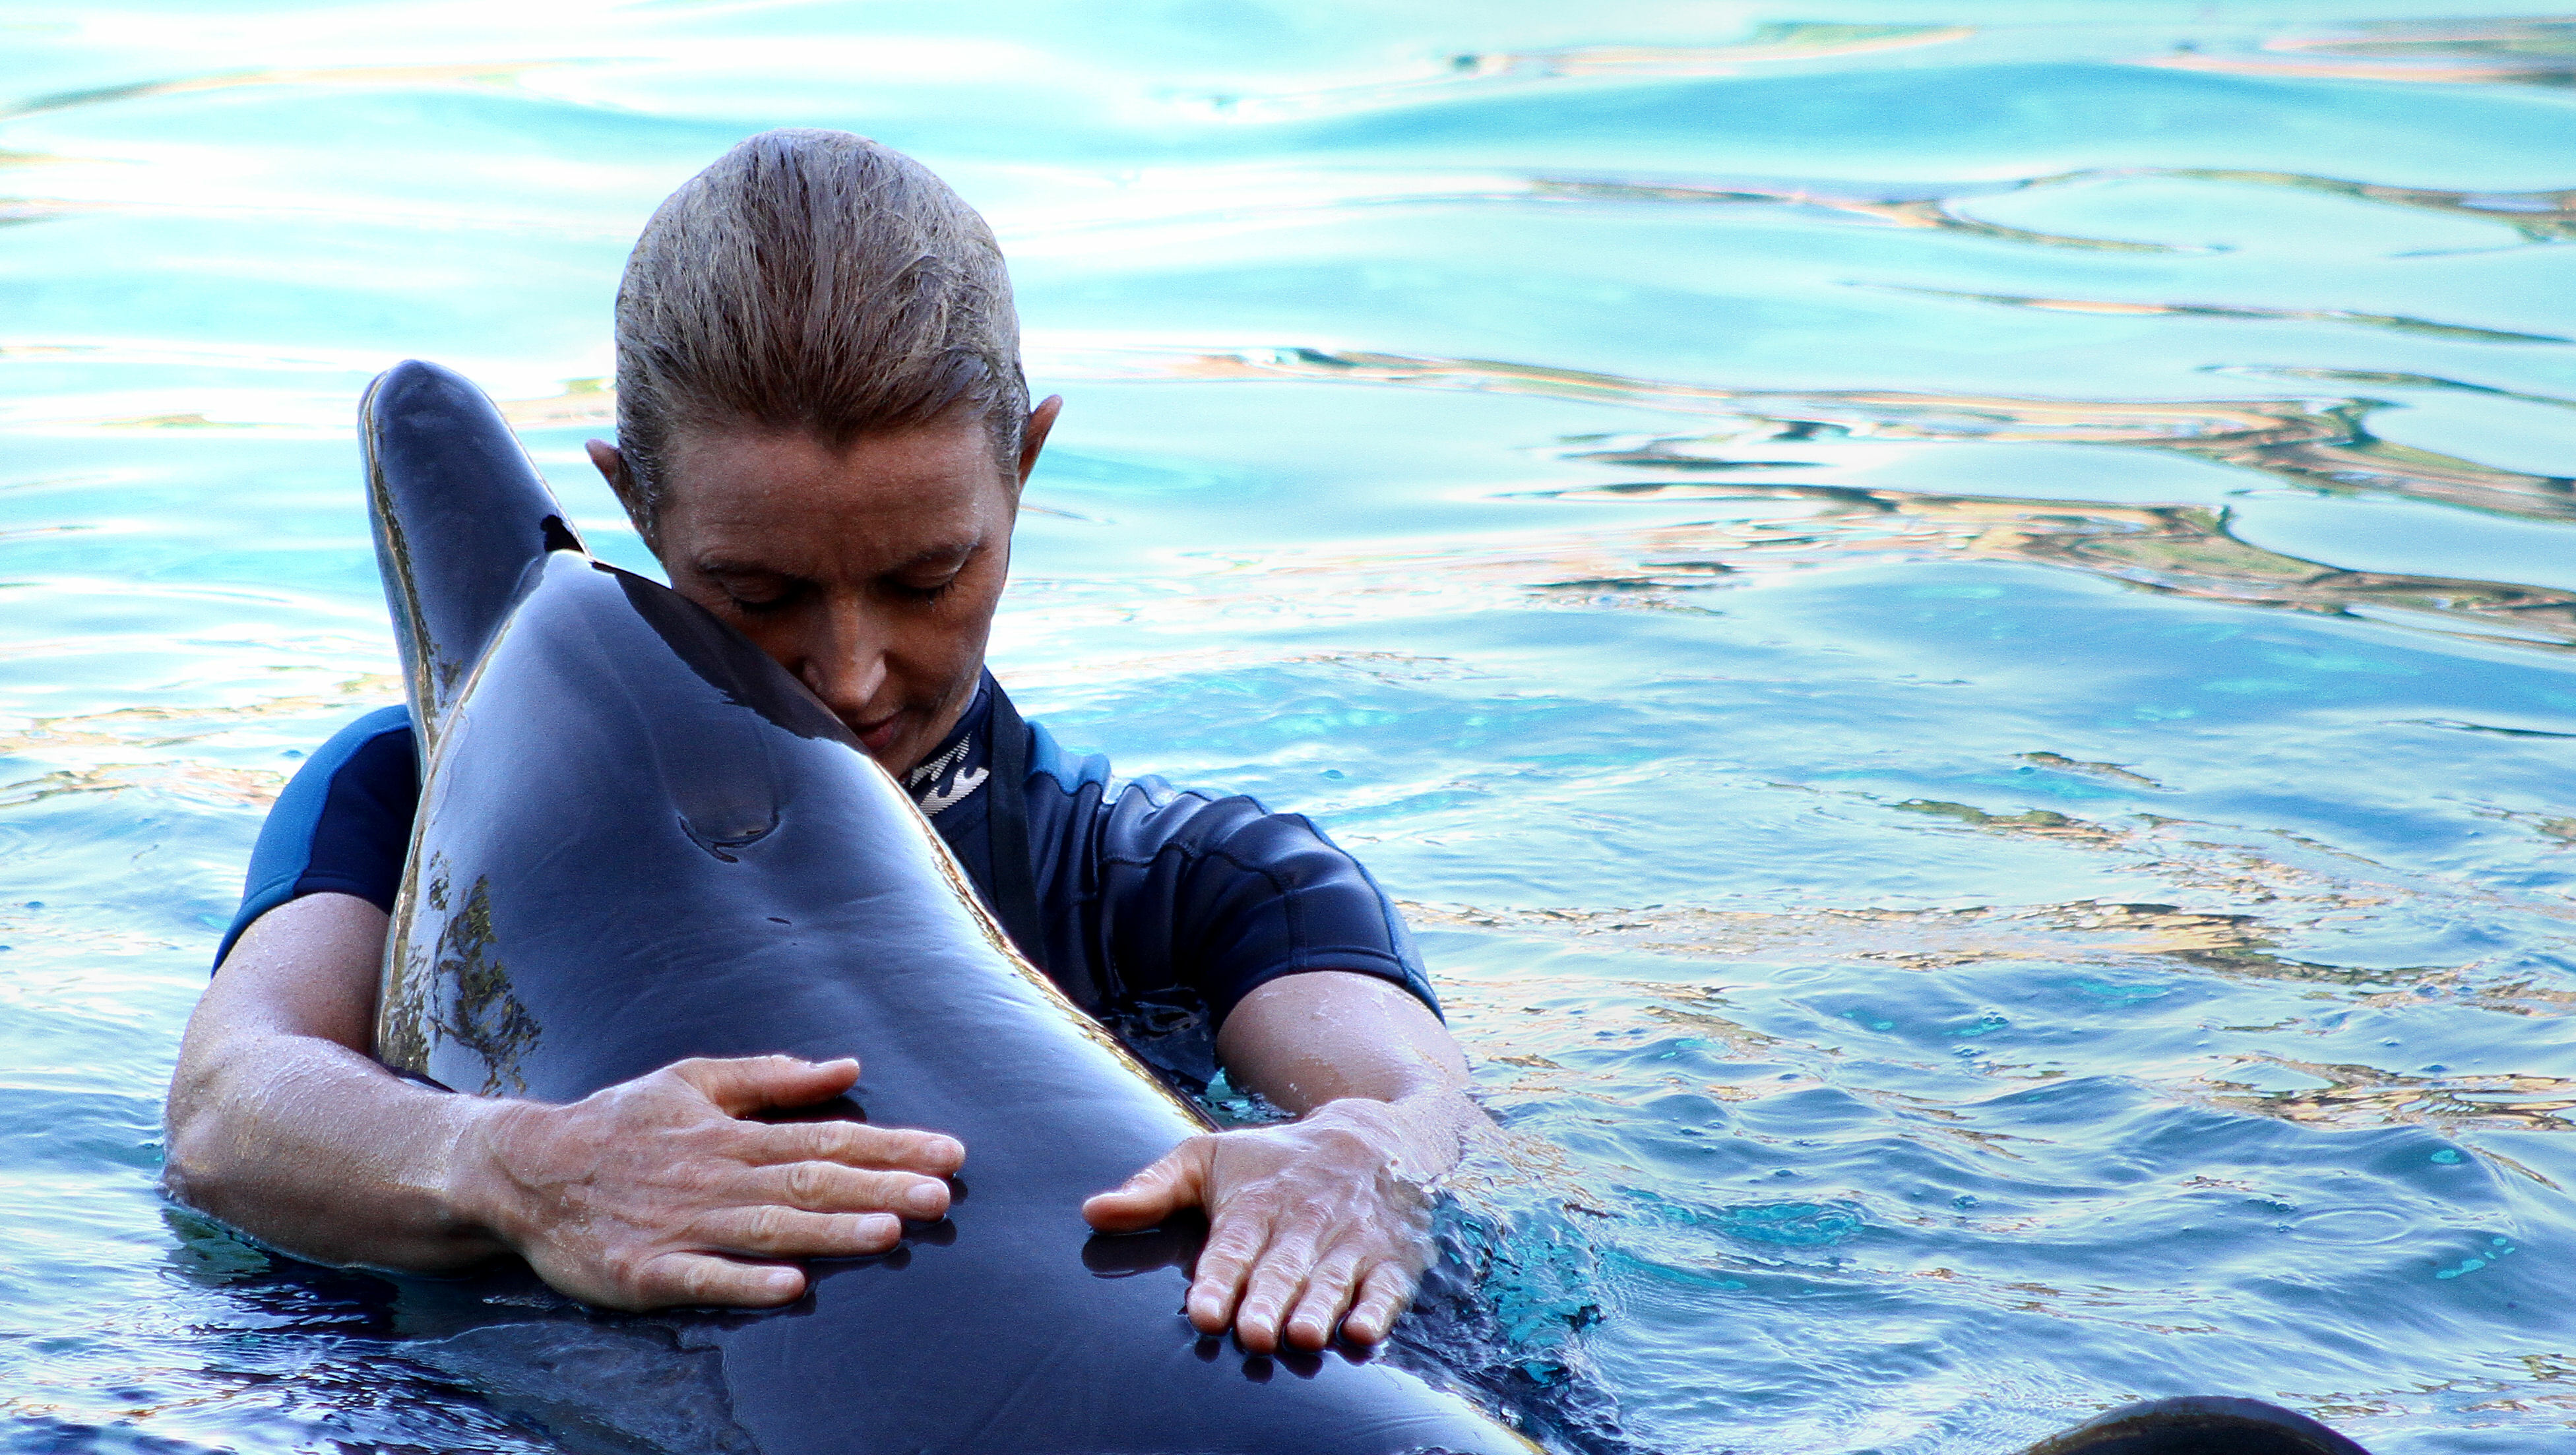 Биолог Баташев рассказал, стоит ли людям бояться дельфинов у берега Анапы